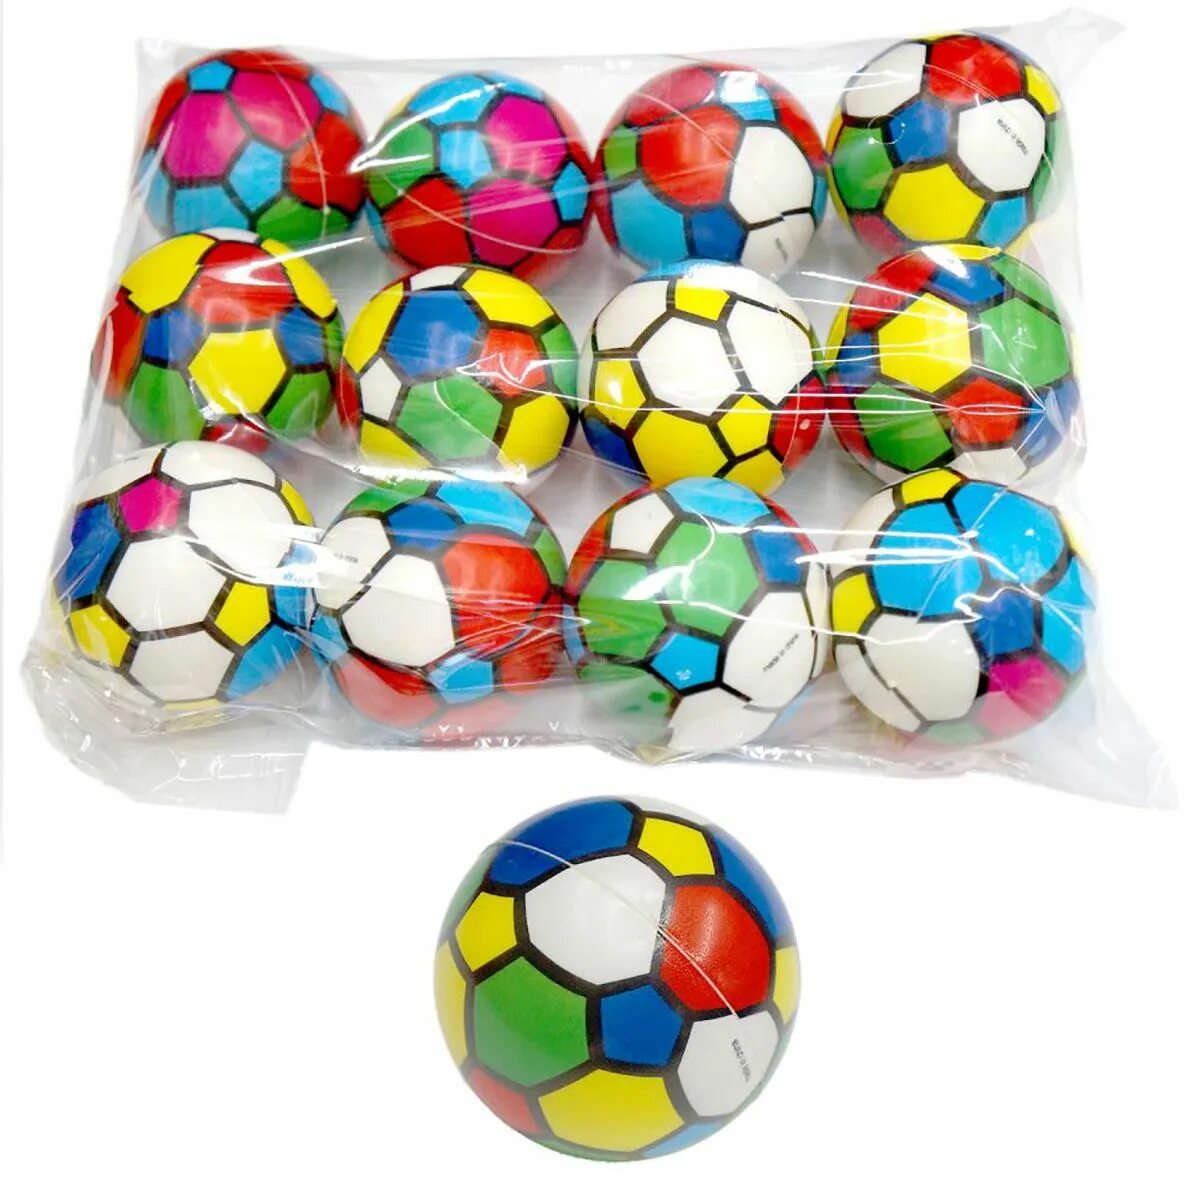 Мяч 6 футбол. Маленький мяч. Разноцветный футбольный мяч. Разноцветные мячики. Игровой мячик разноцветный.